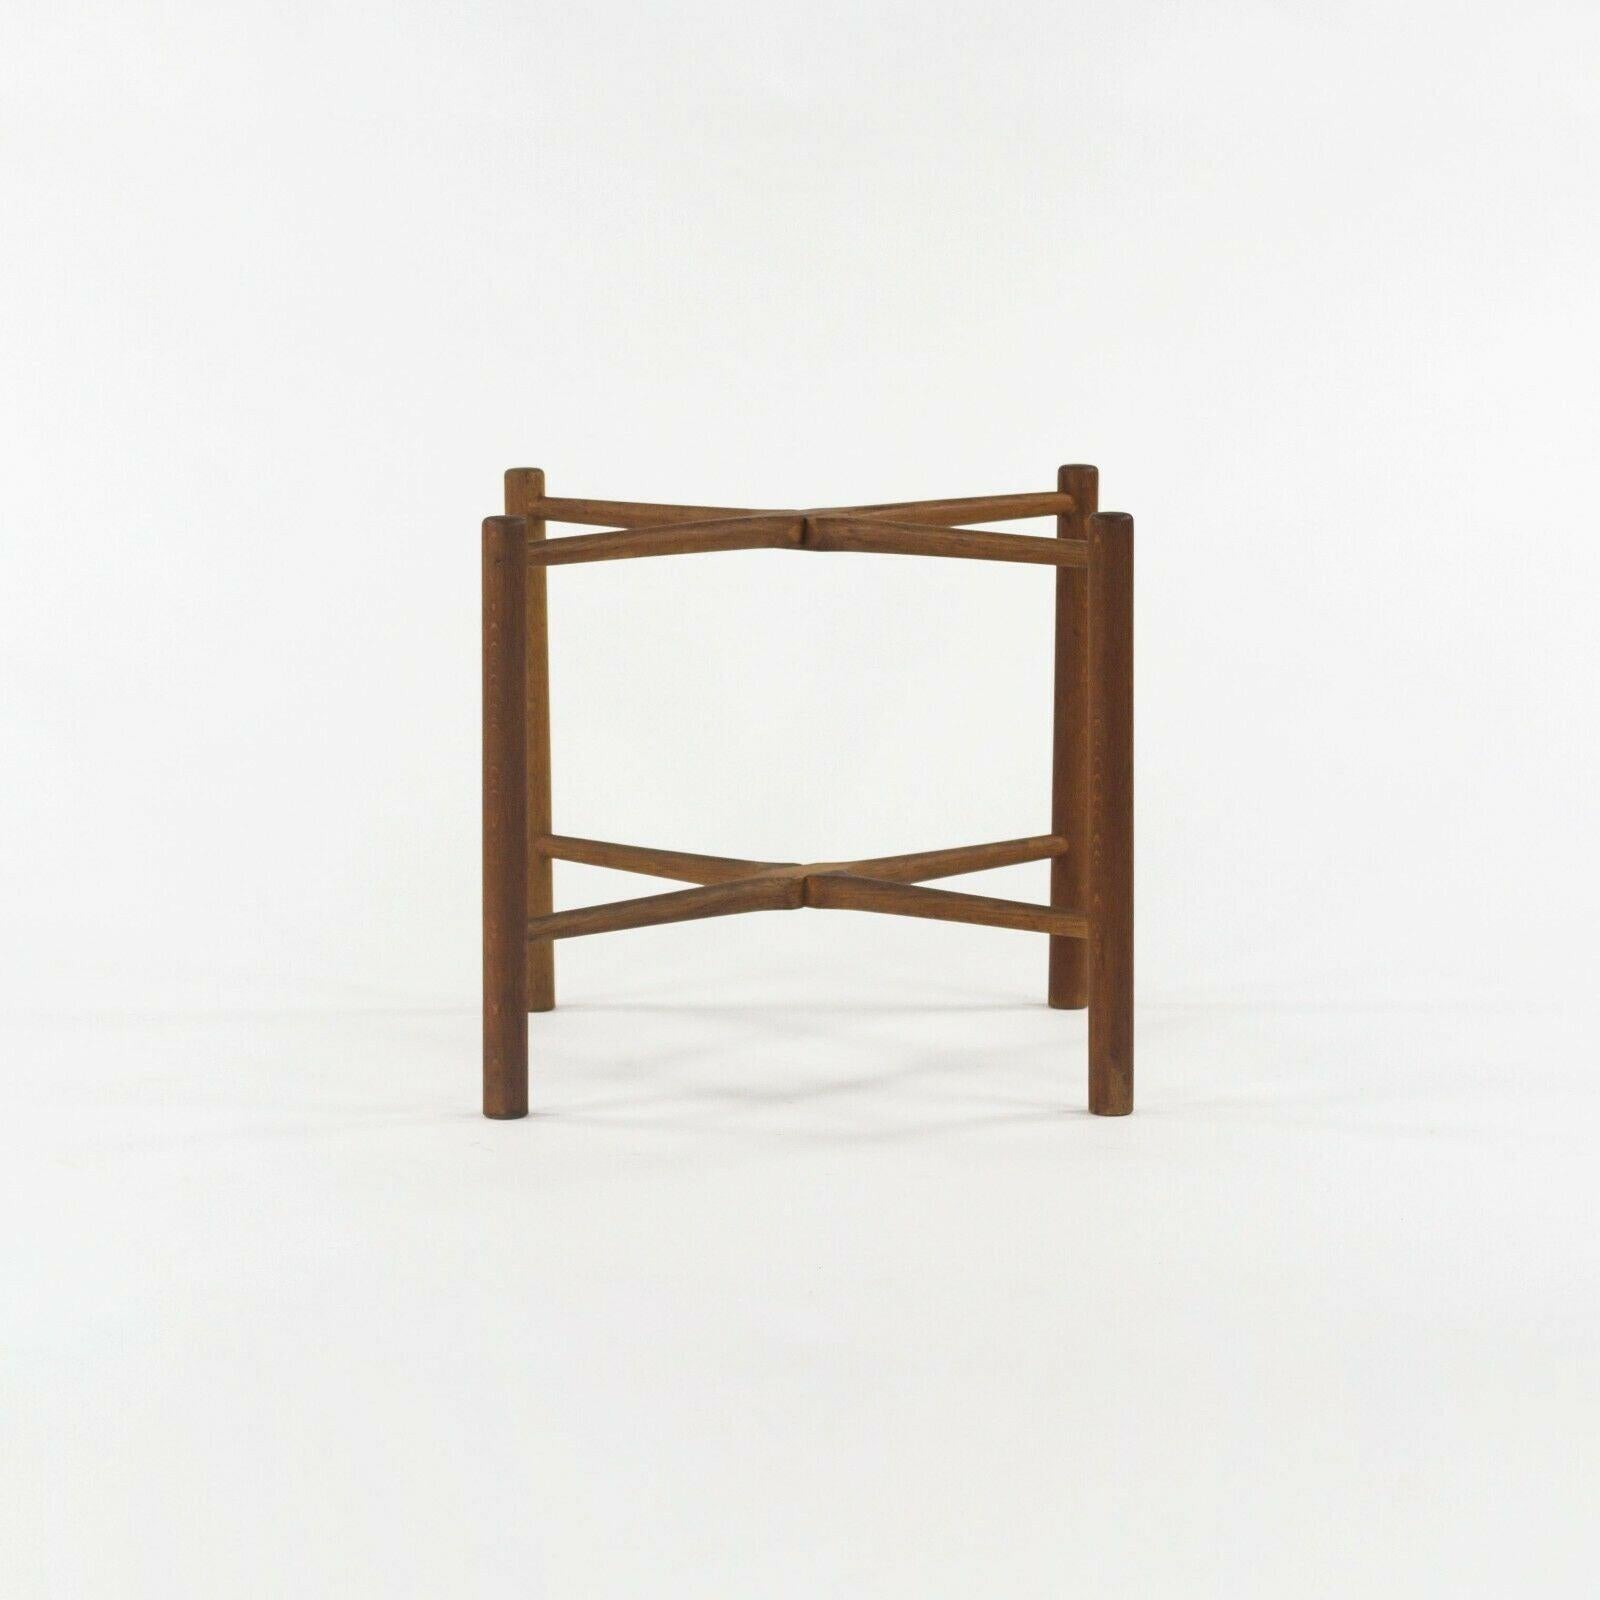 1960 PP35 Hans Wegner for &reas Tuck Folding Teak & Oak Side Table 2x Available For Sale 1